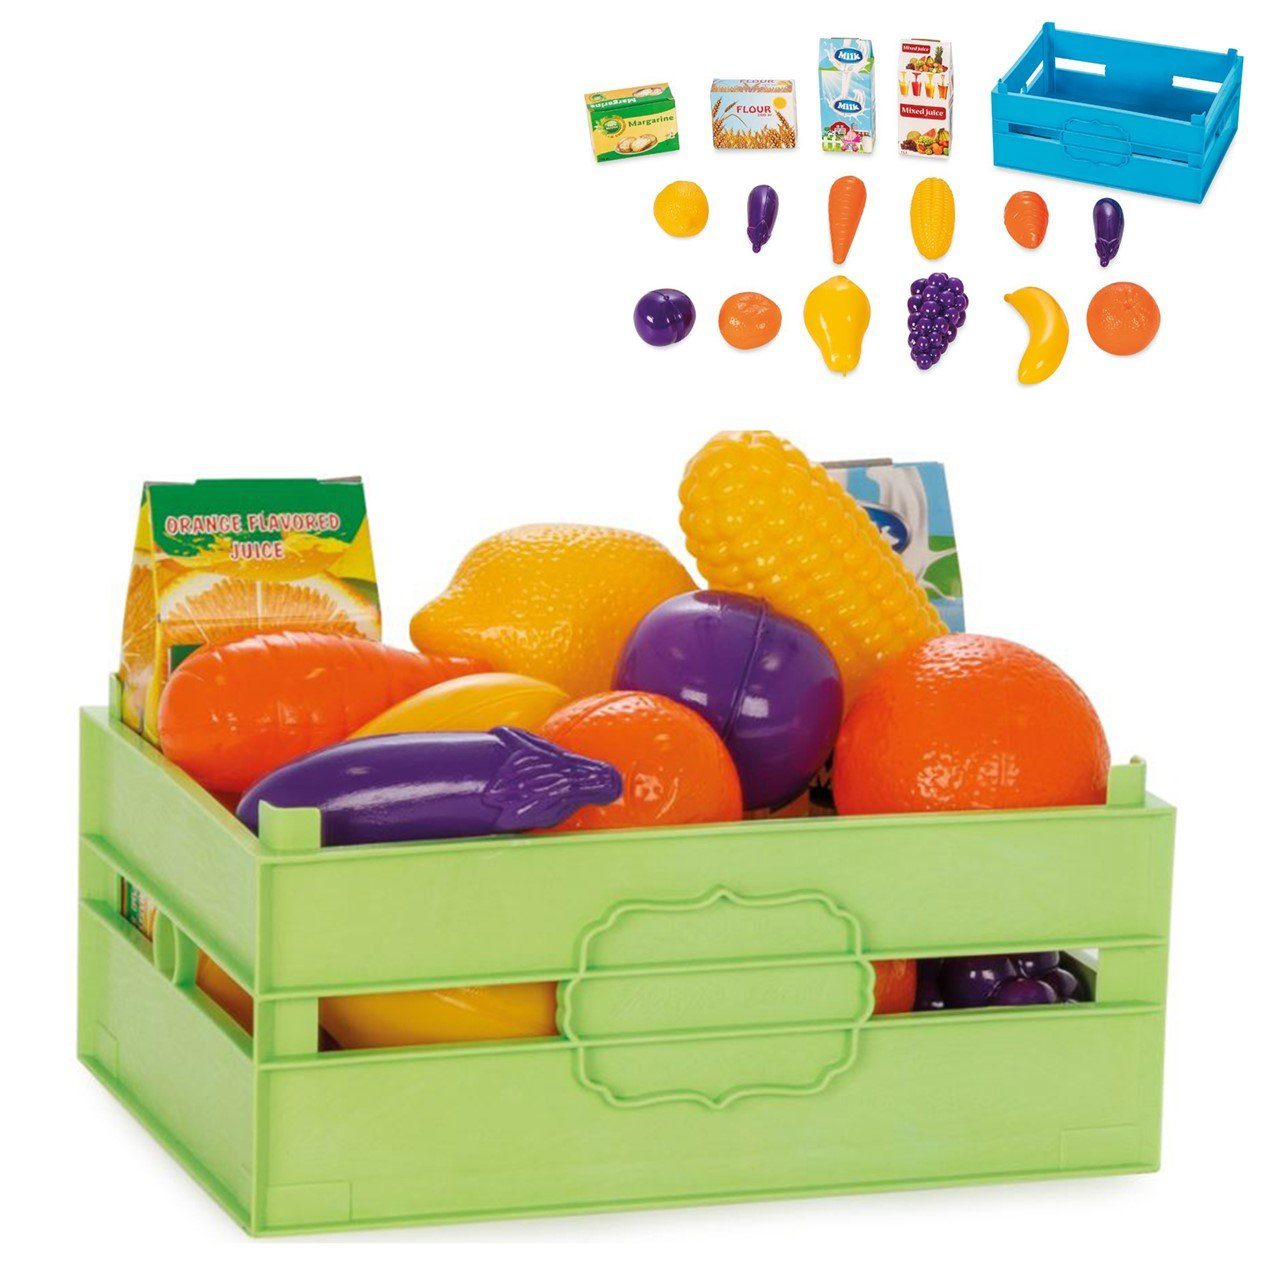 Pilsan Spiellebensmittel Spielzeuglebensmittel-Box 06037, Obst Gemüse 16-teilig Milch Mehl Saft